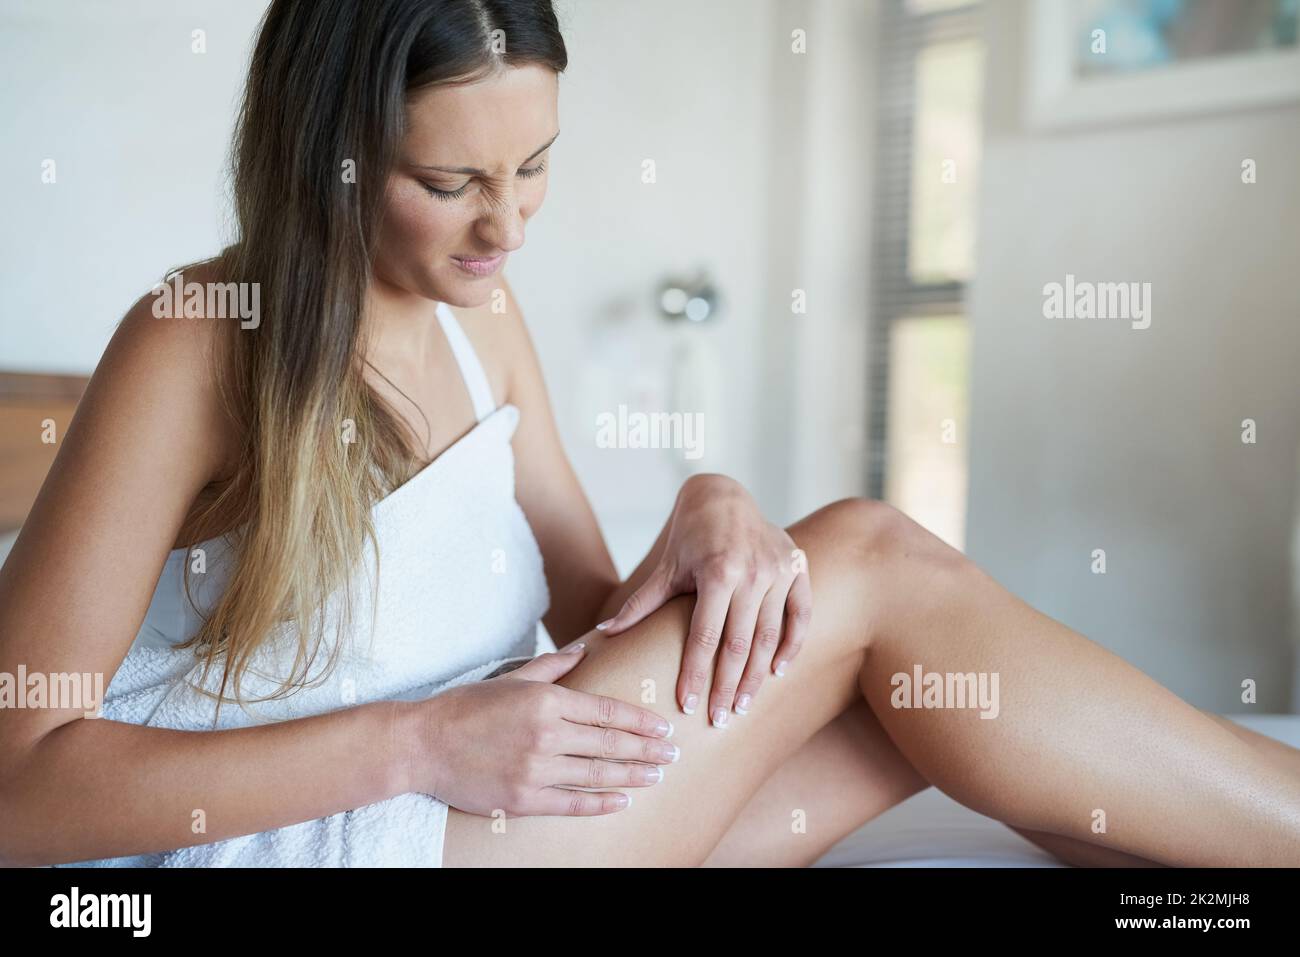 C'est la cellulite que je vois. Photo d'une jeune femme qui ne regarde pas impressionnée en pinçant la peau sur sa cuisse dans sa chambre à la maison. Banque D'Images